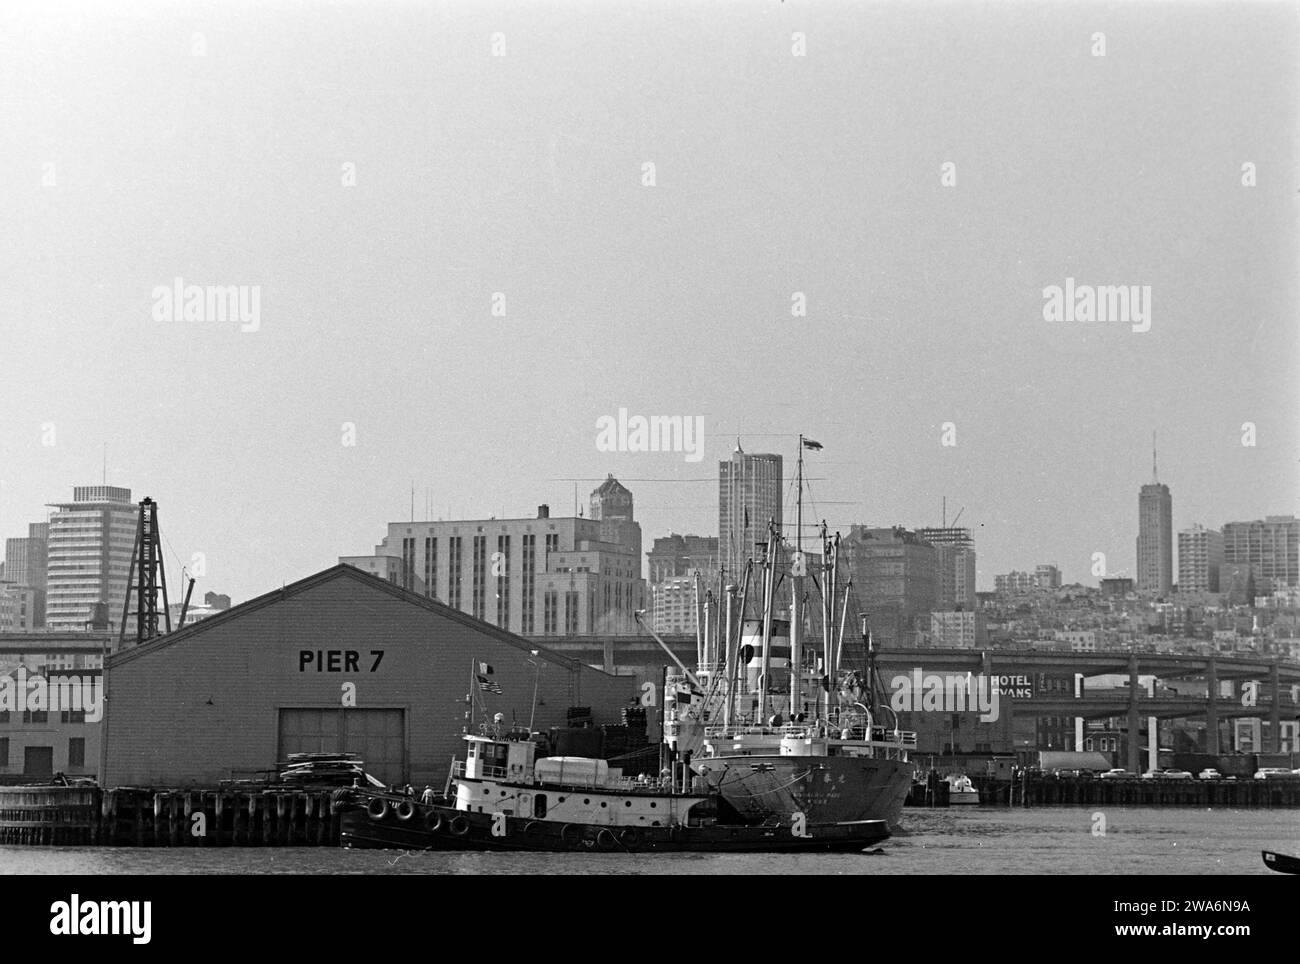 Ein Schleppkahn liegt am ehemaligen Pier 7 von San Francisco, der 1973 abbrannte und 1989 abgerissen und wieder aufgebaut wurde, San Francisco 1962. A tugboat is moored at San Francisco's former Pier 7, which burned down in 1973 and was demolished and rebuilt in 1989, San Francisco 1962. Stock Photo